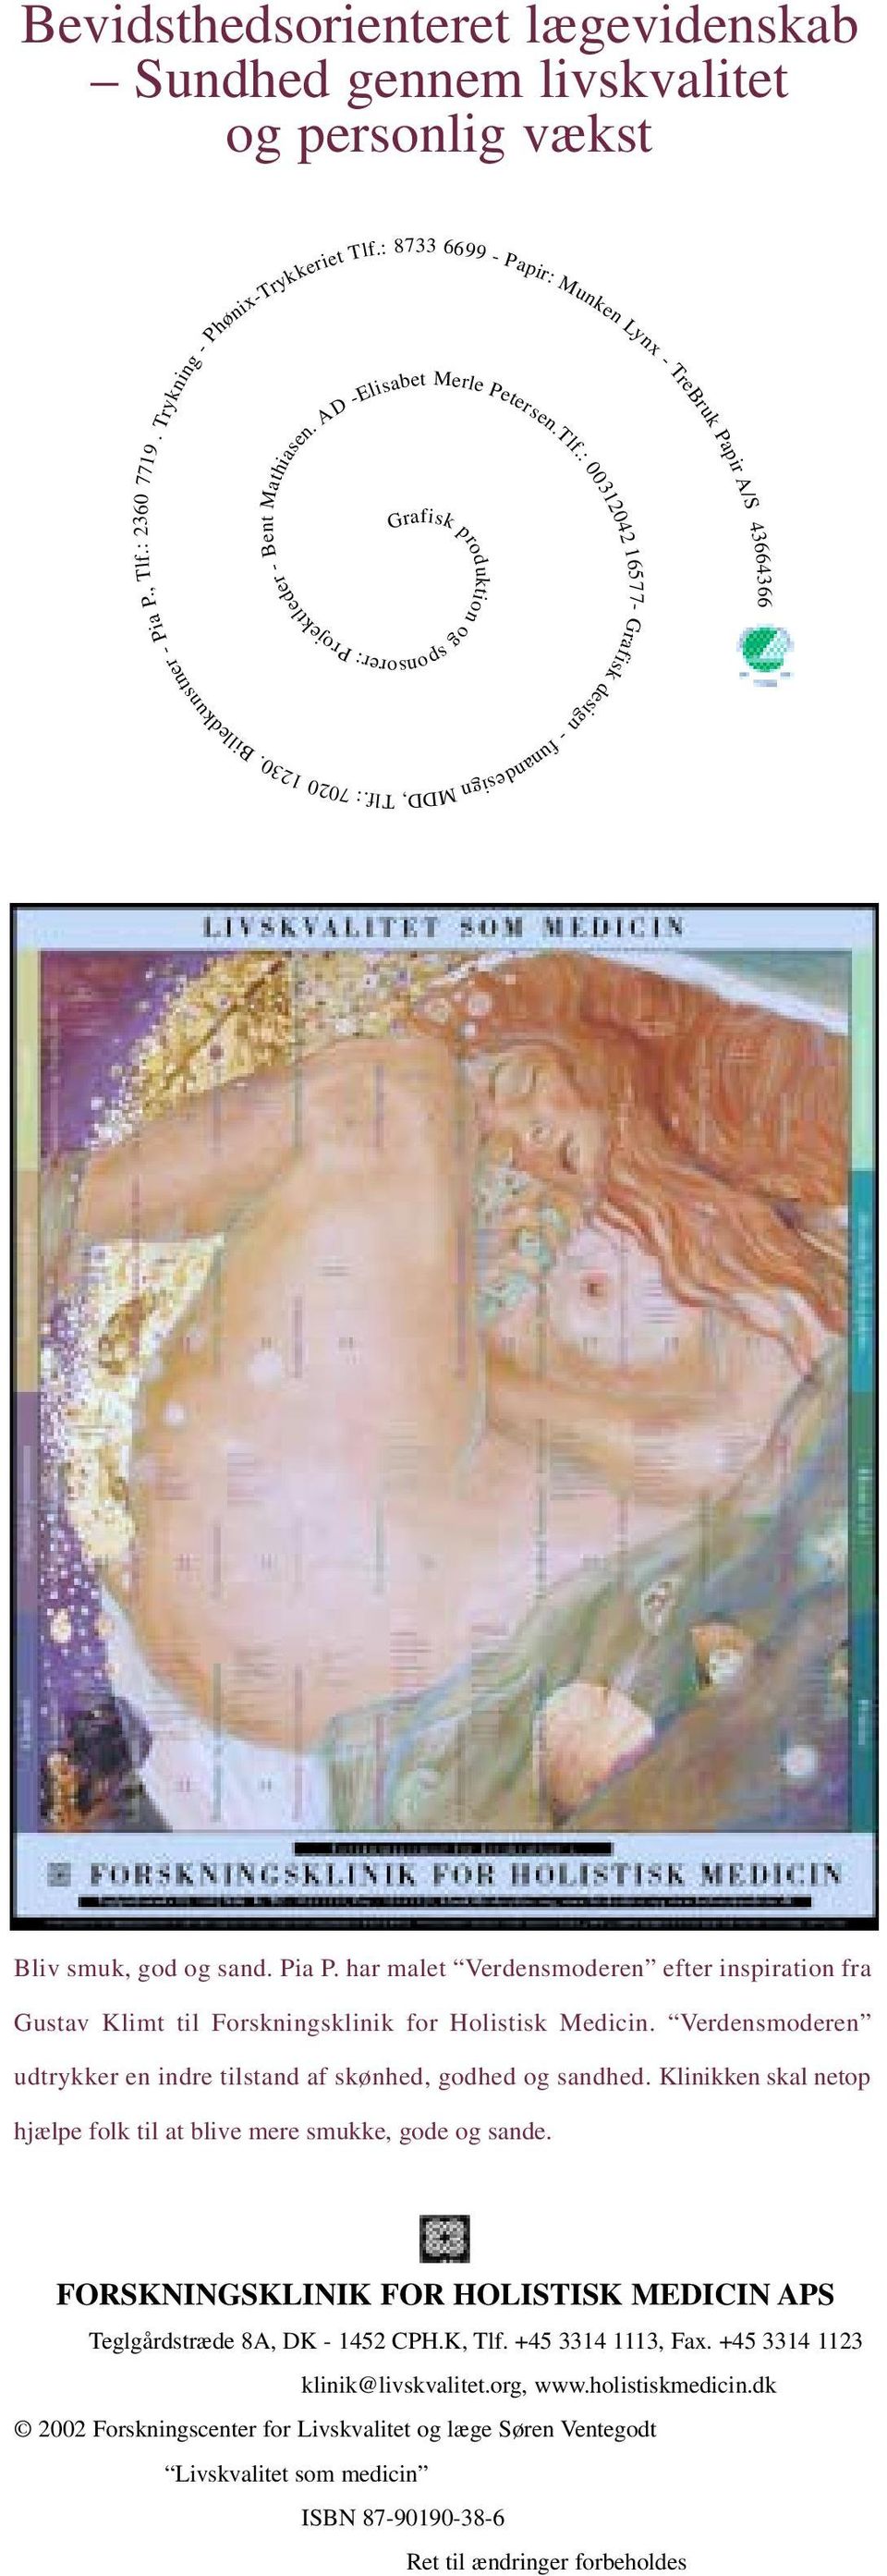 : 7020 Bliv smuk, god og sand. Pia P. har malet Verdensmoderen efter inspiration fra Gustav Klimt til Forskningsklinik for Holistisk Medicin.